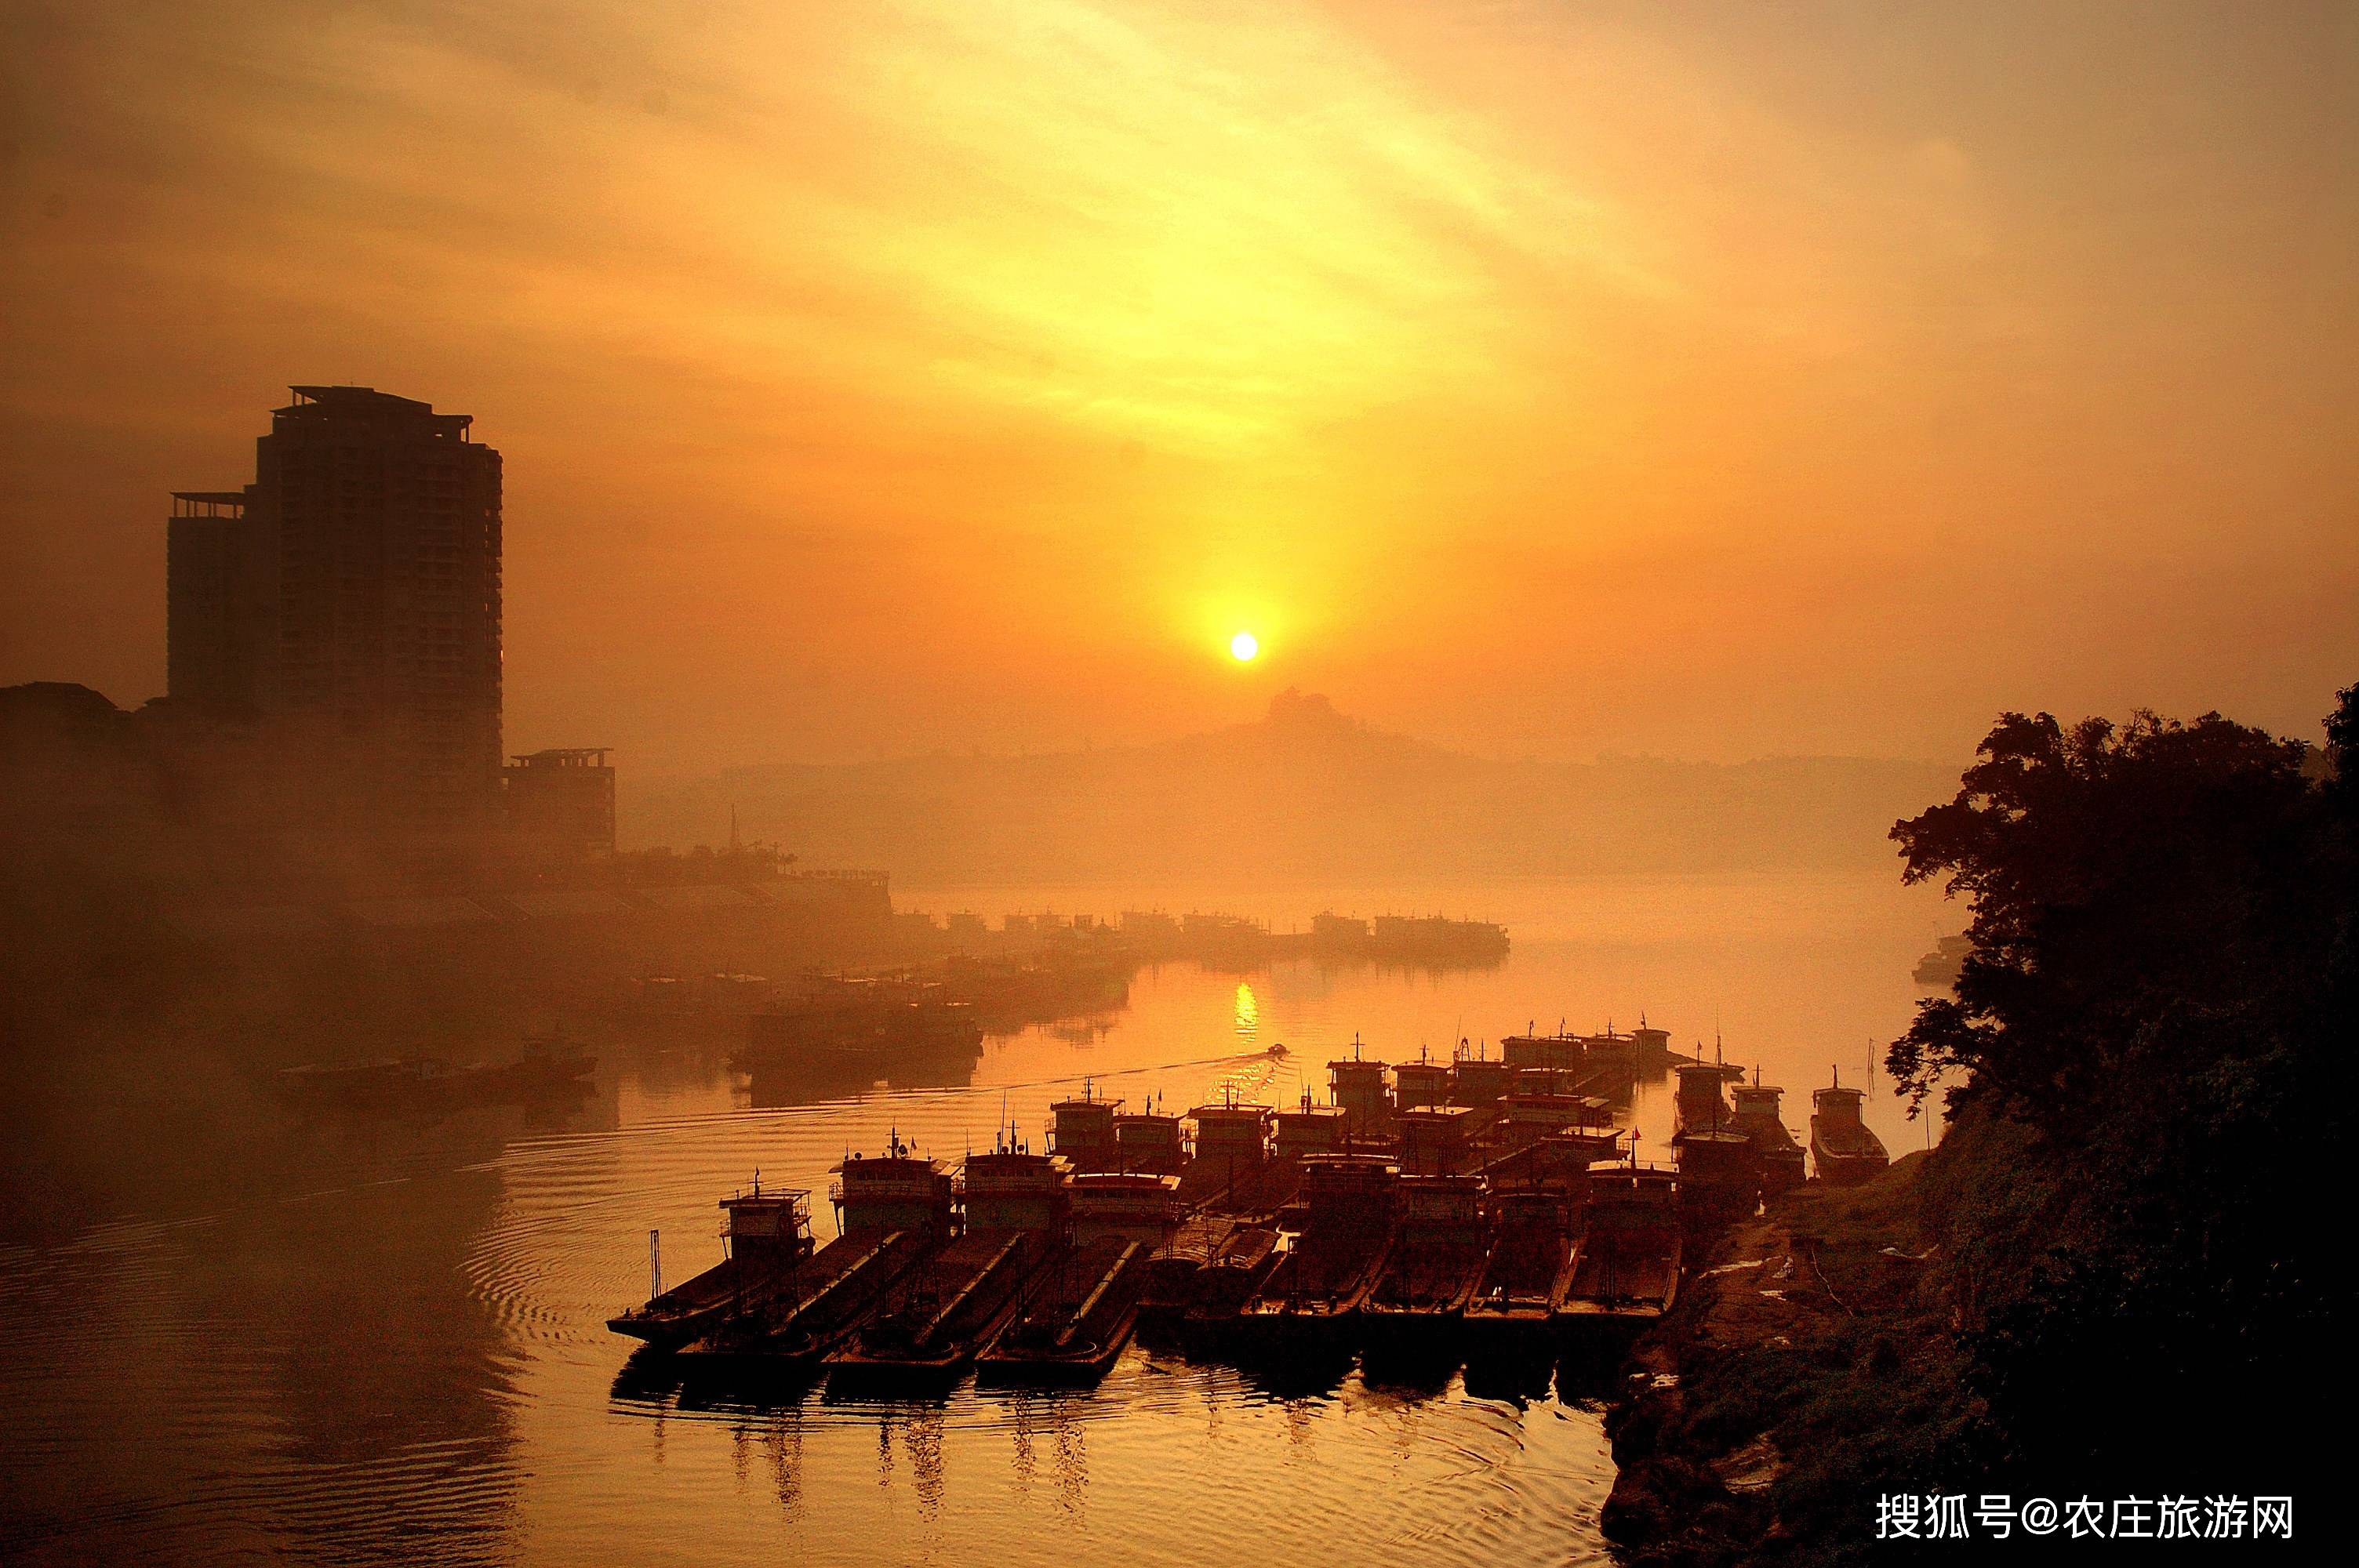 重庆合川区:三江环绕之城,风景秀美之地!